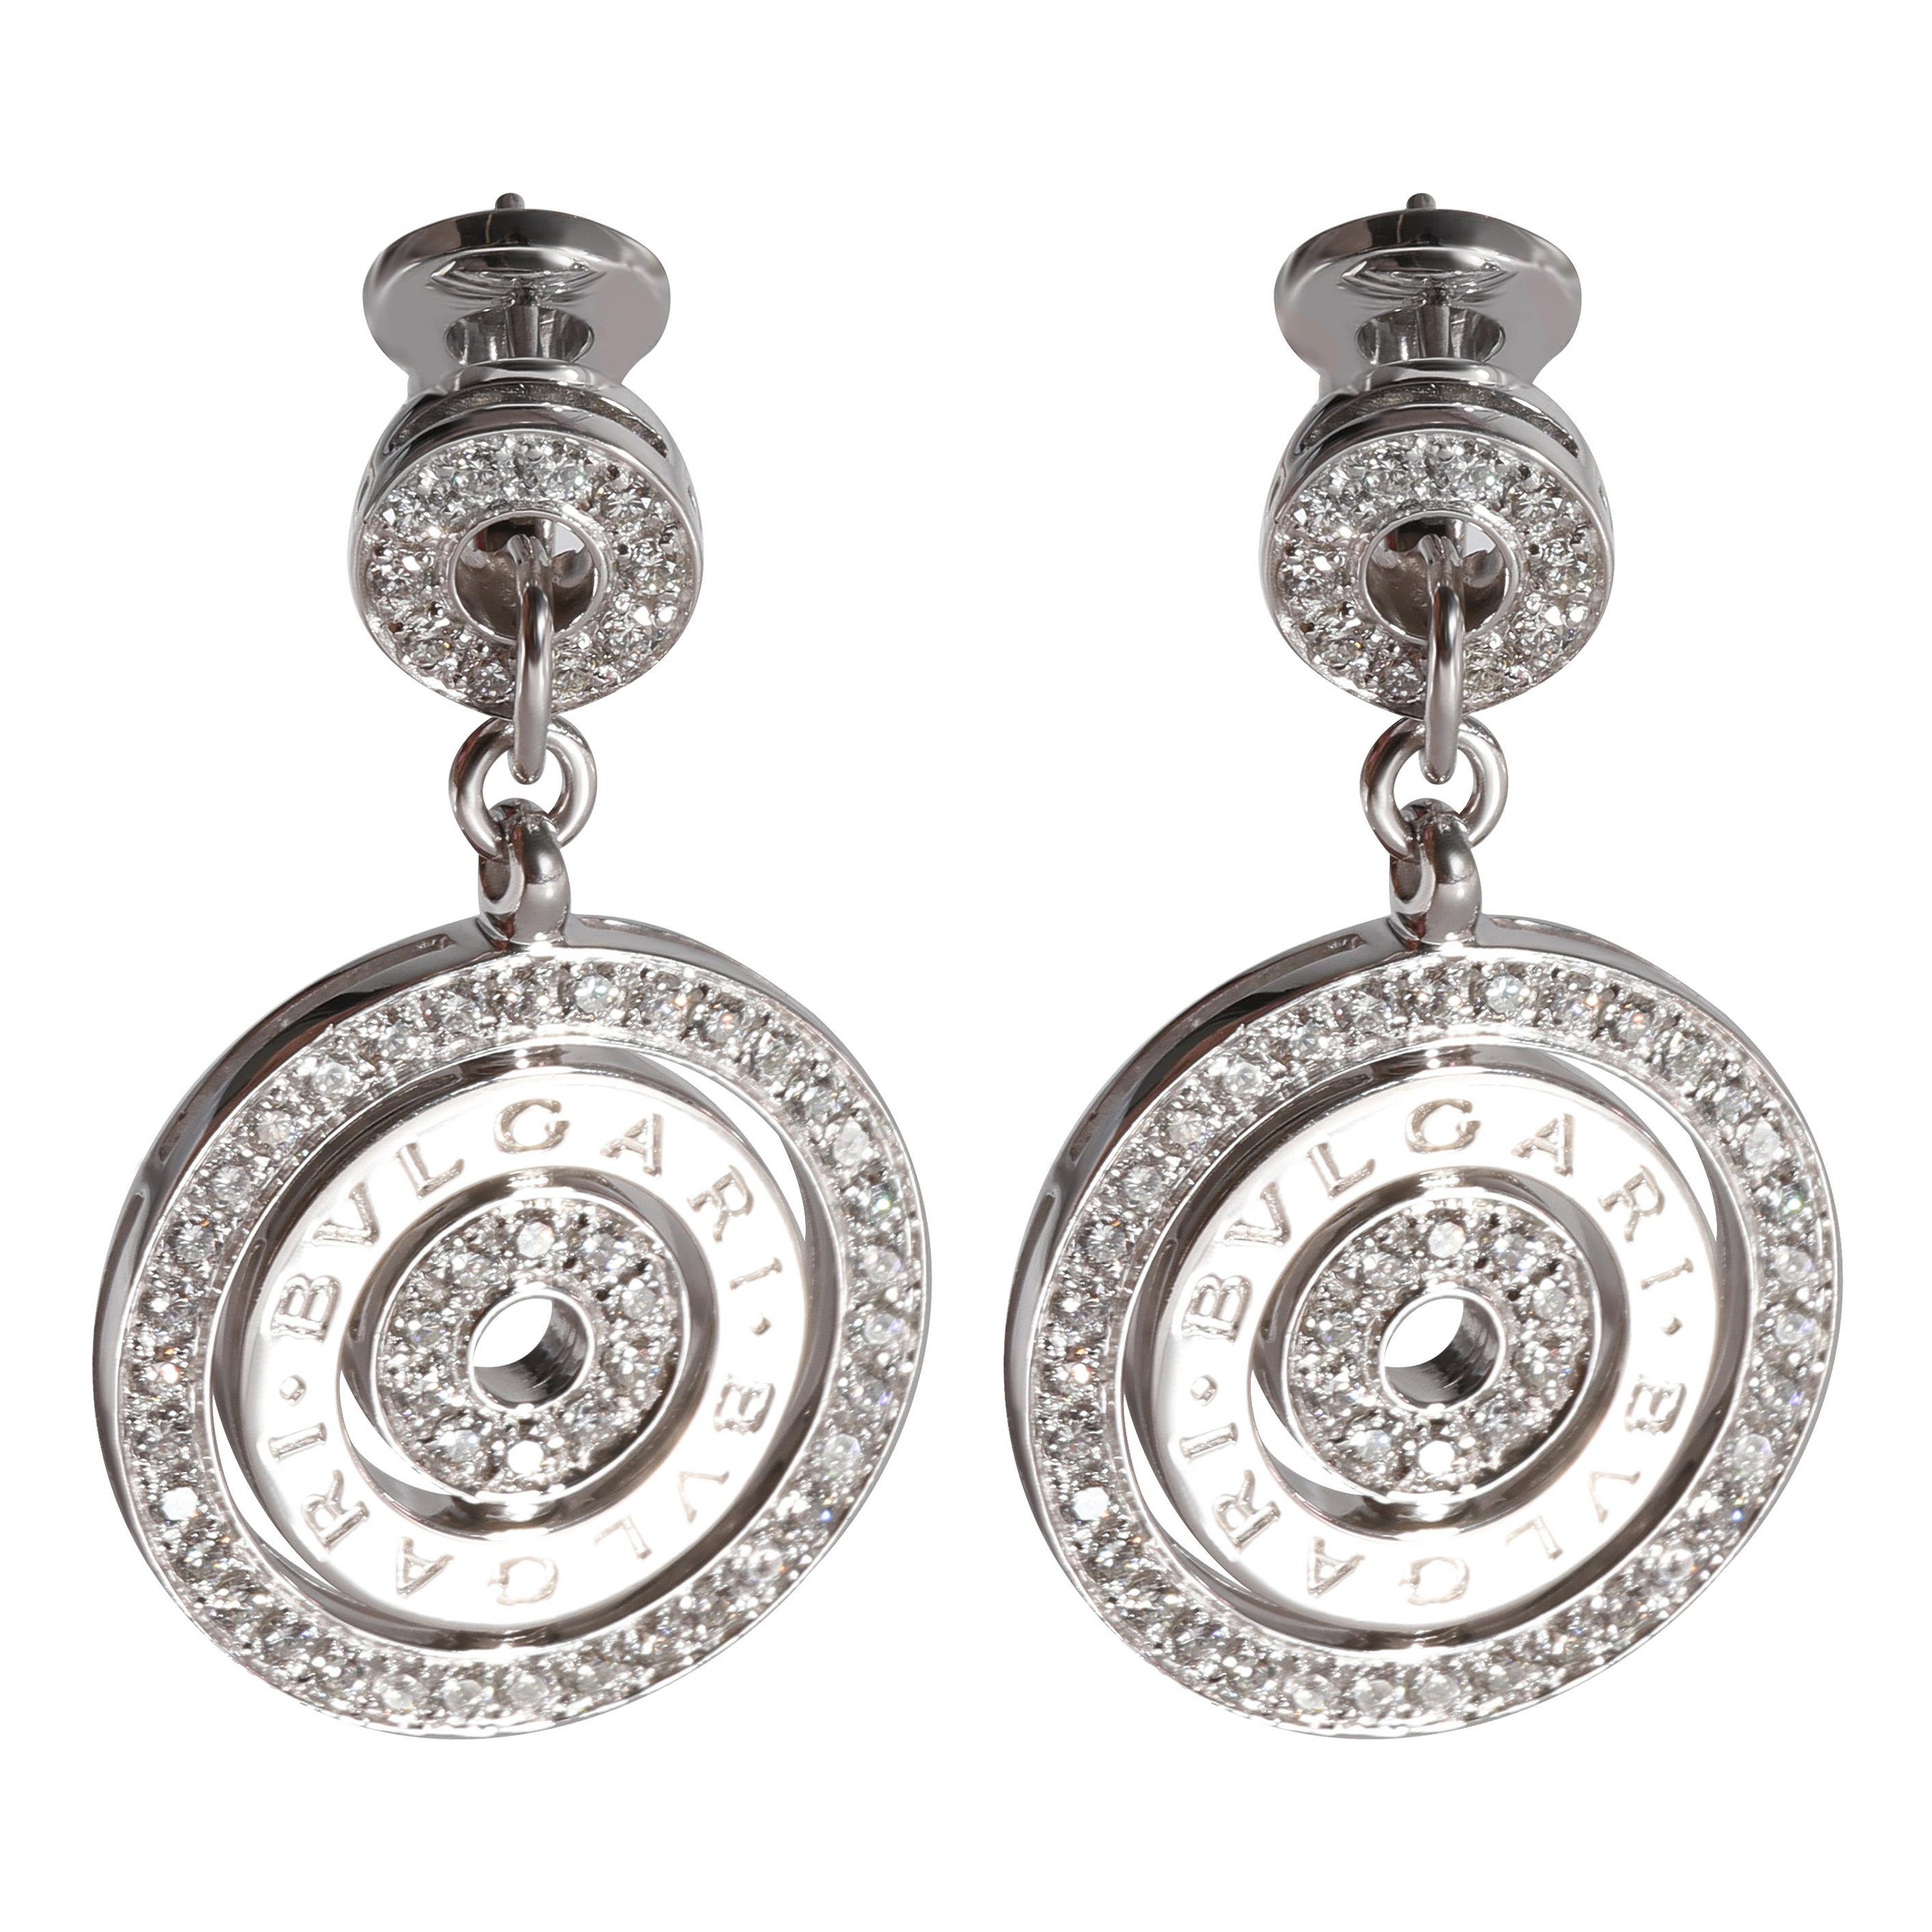 Bvlgari Astrale Diamond Earrings in 18k White Gold 1.3 CTW